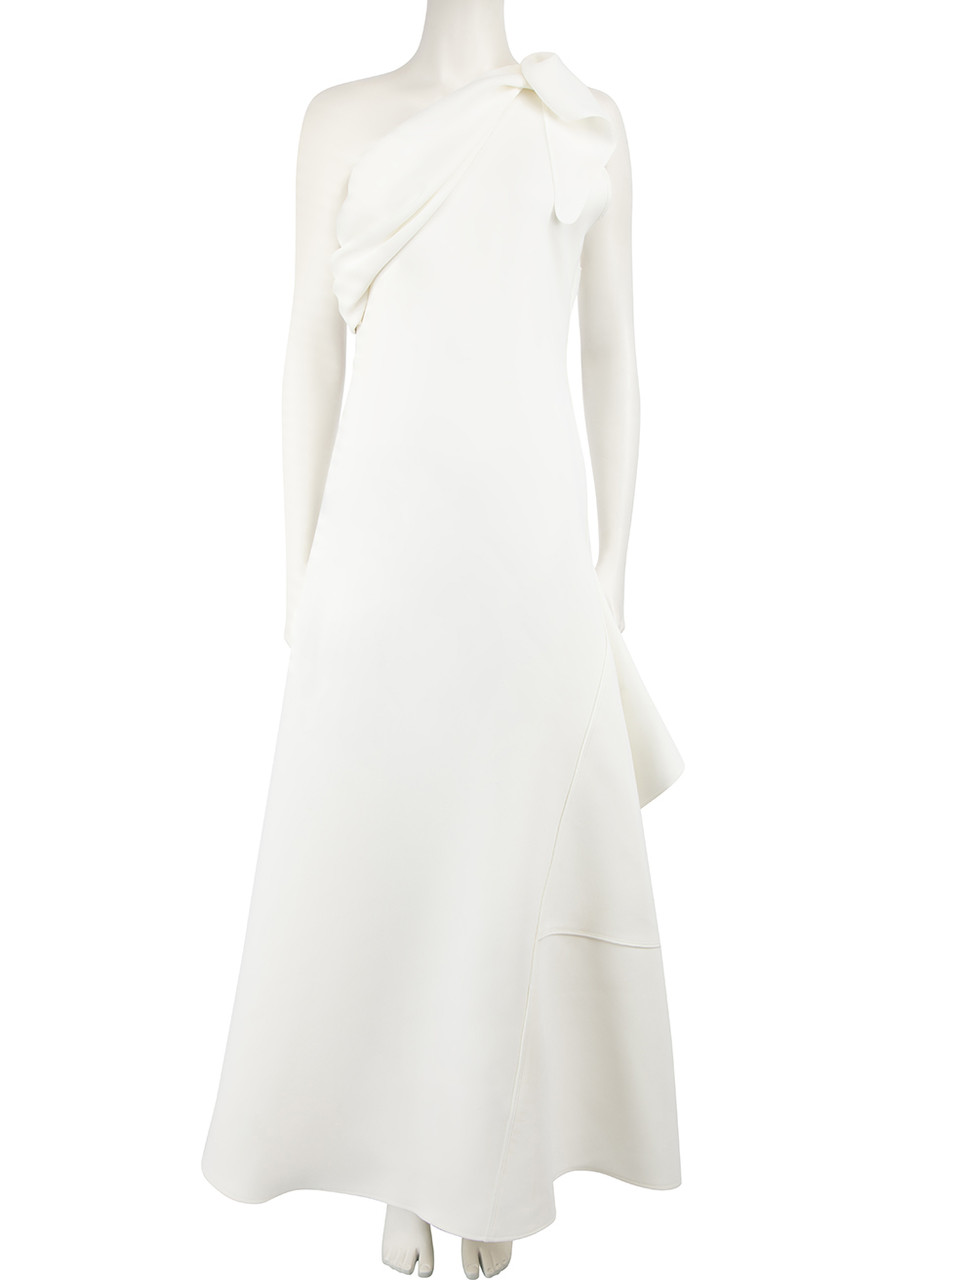 Maticevski AW23 White Rigorous Maxi Gown